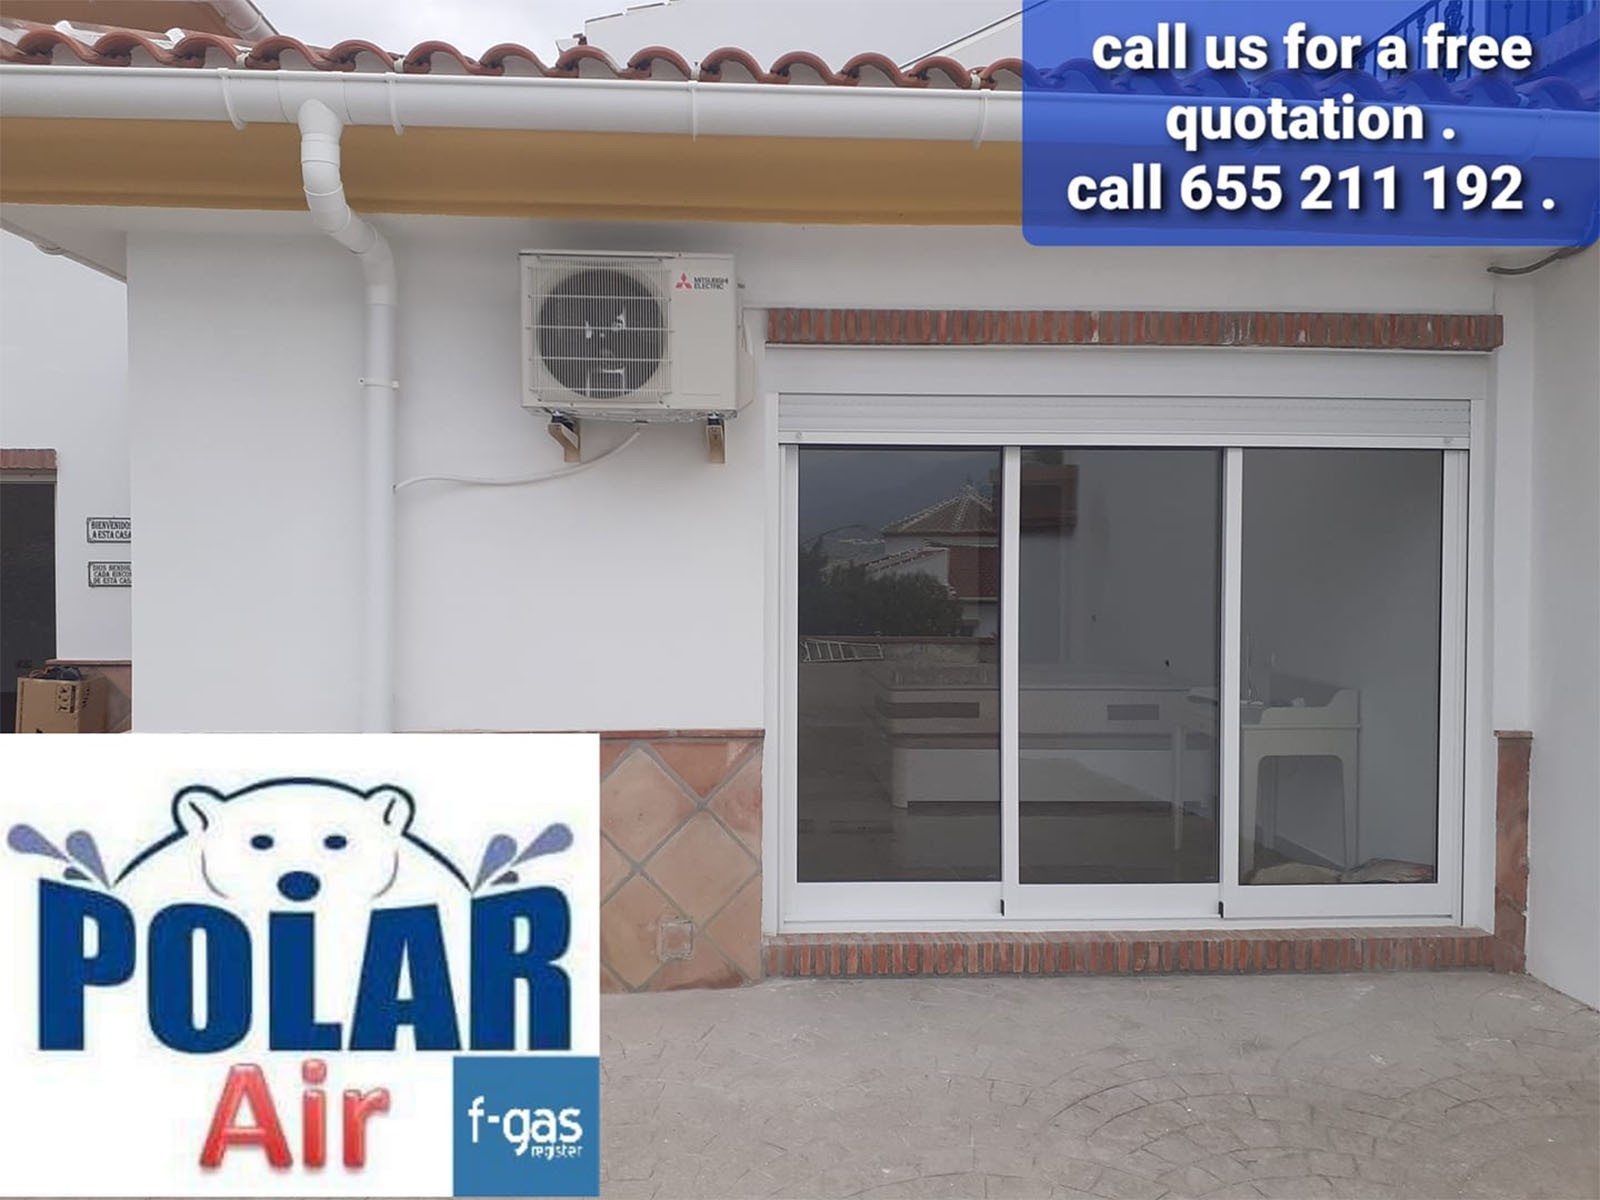 Air Conditioning PolarAir in Torre del Mar, Axarquia